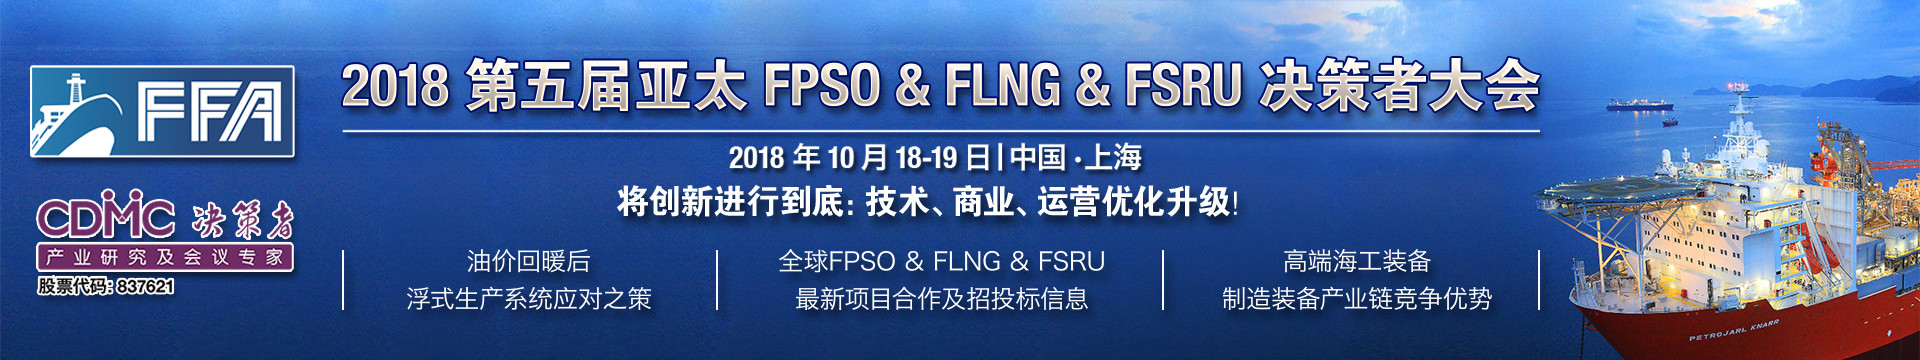 2018第五届亚太FPSO&FLNG&FSRU大会